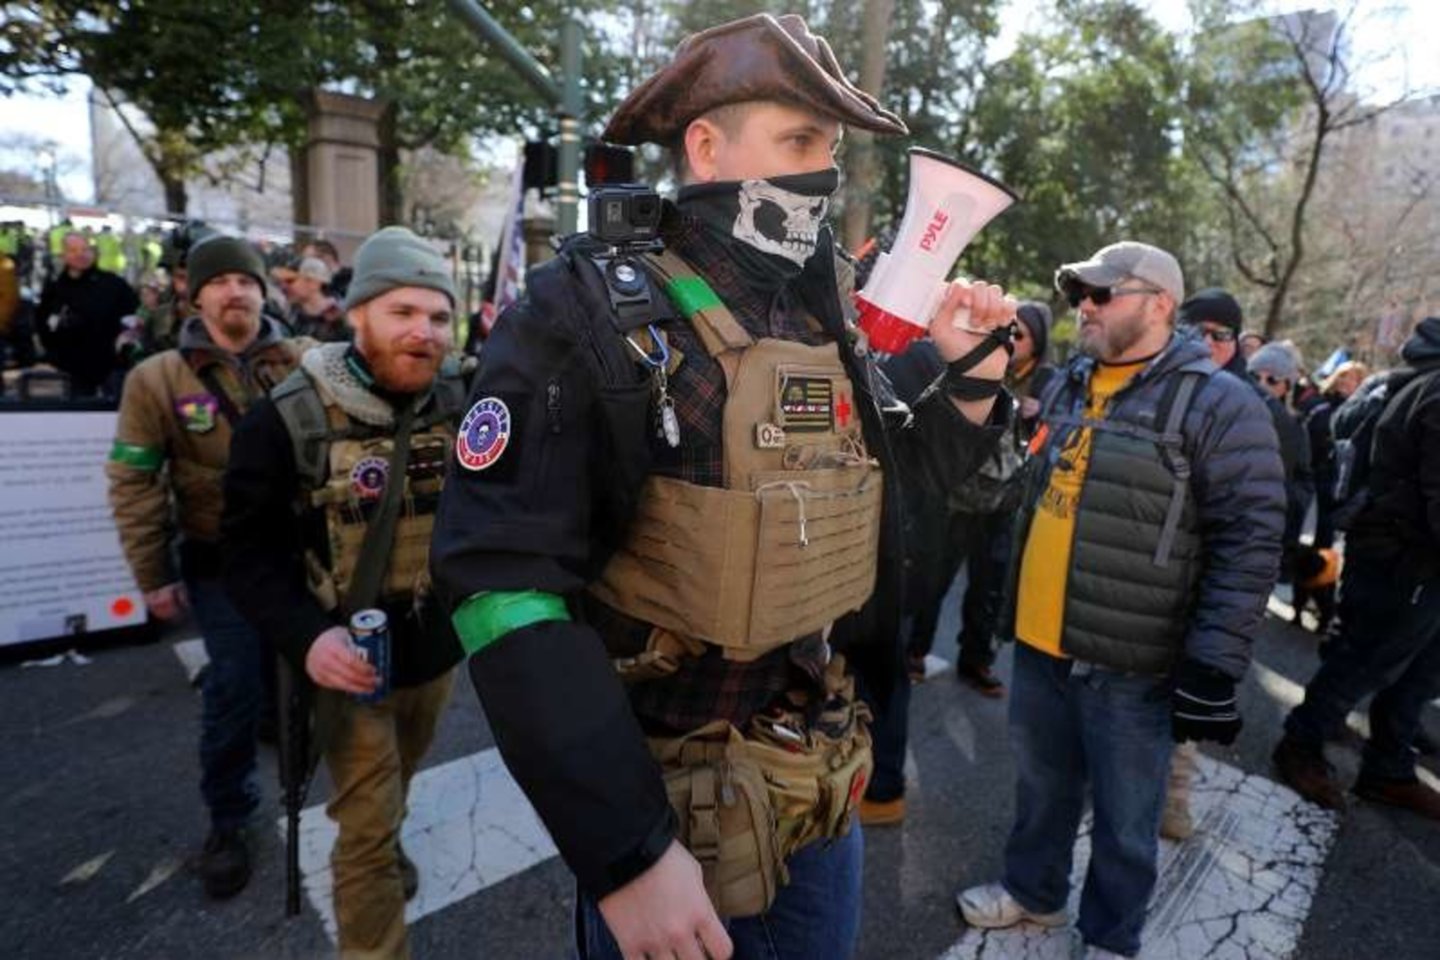 FKD ir kitų neonacių grupuočių nariai mėgsta pozuoti su ginklais ir dengti veidą kaukole papuoštomis kaukėmis.